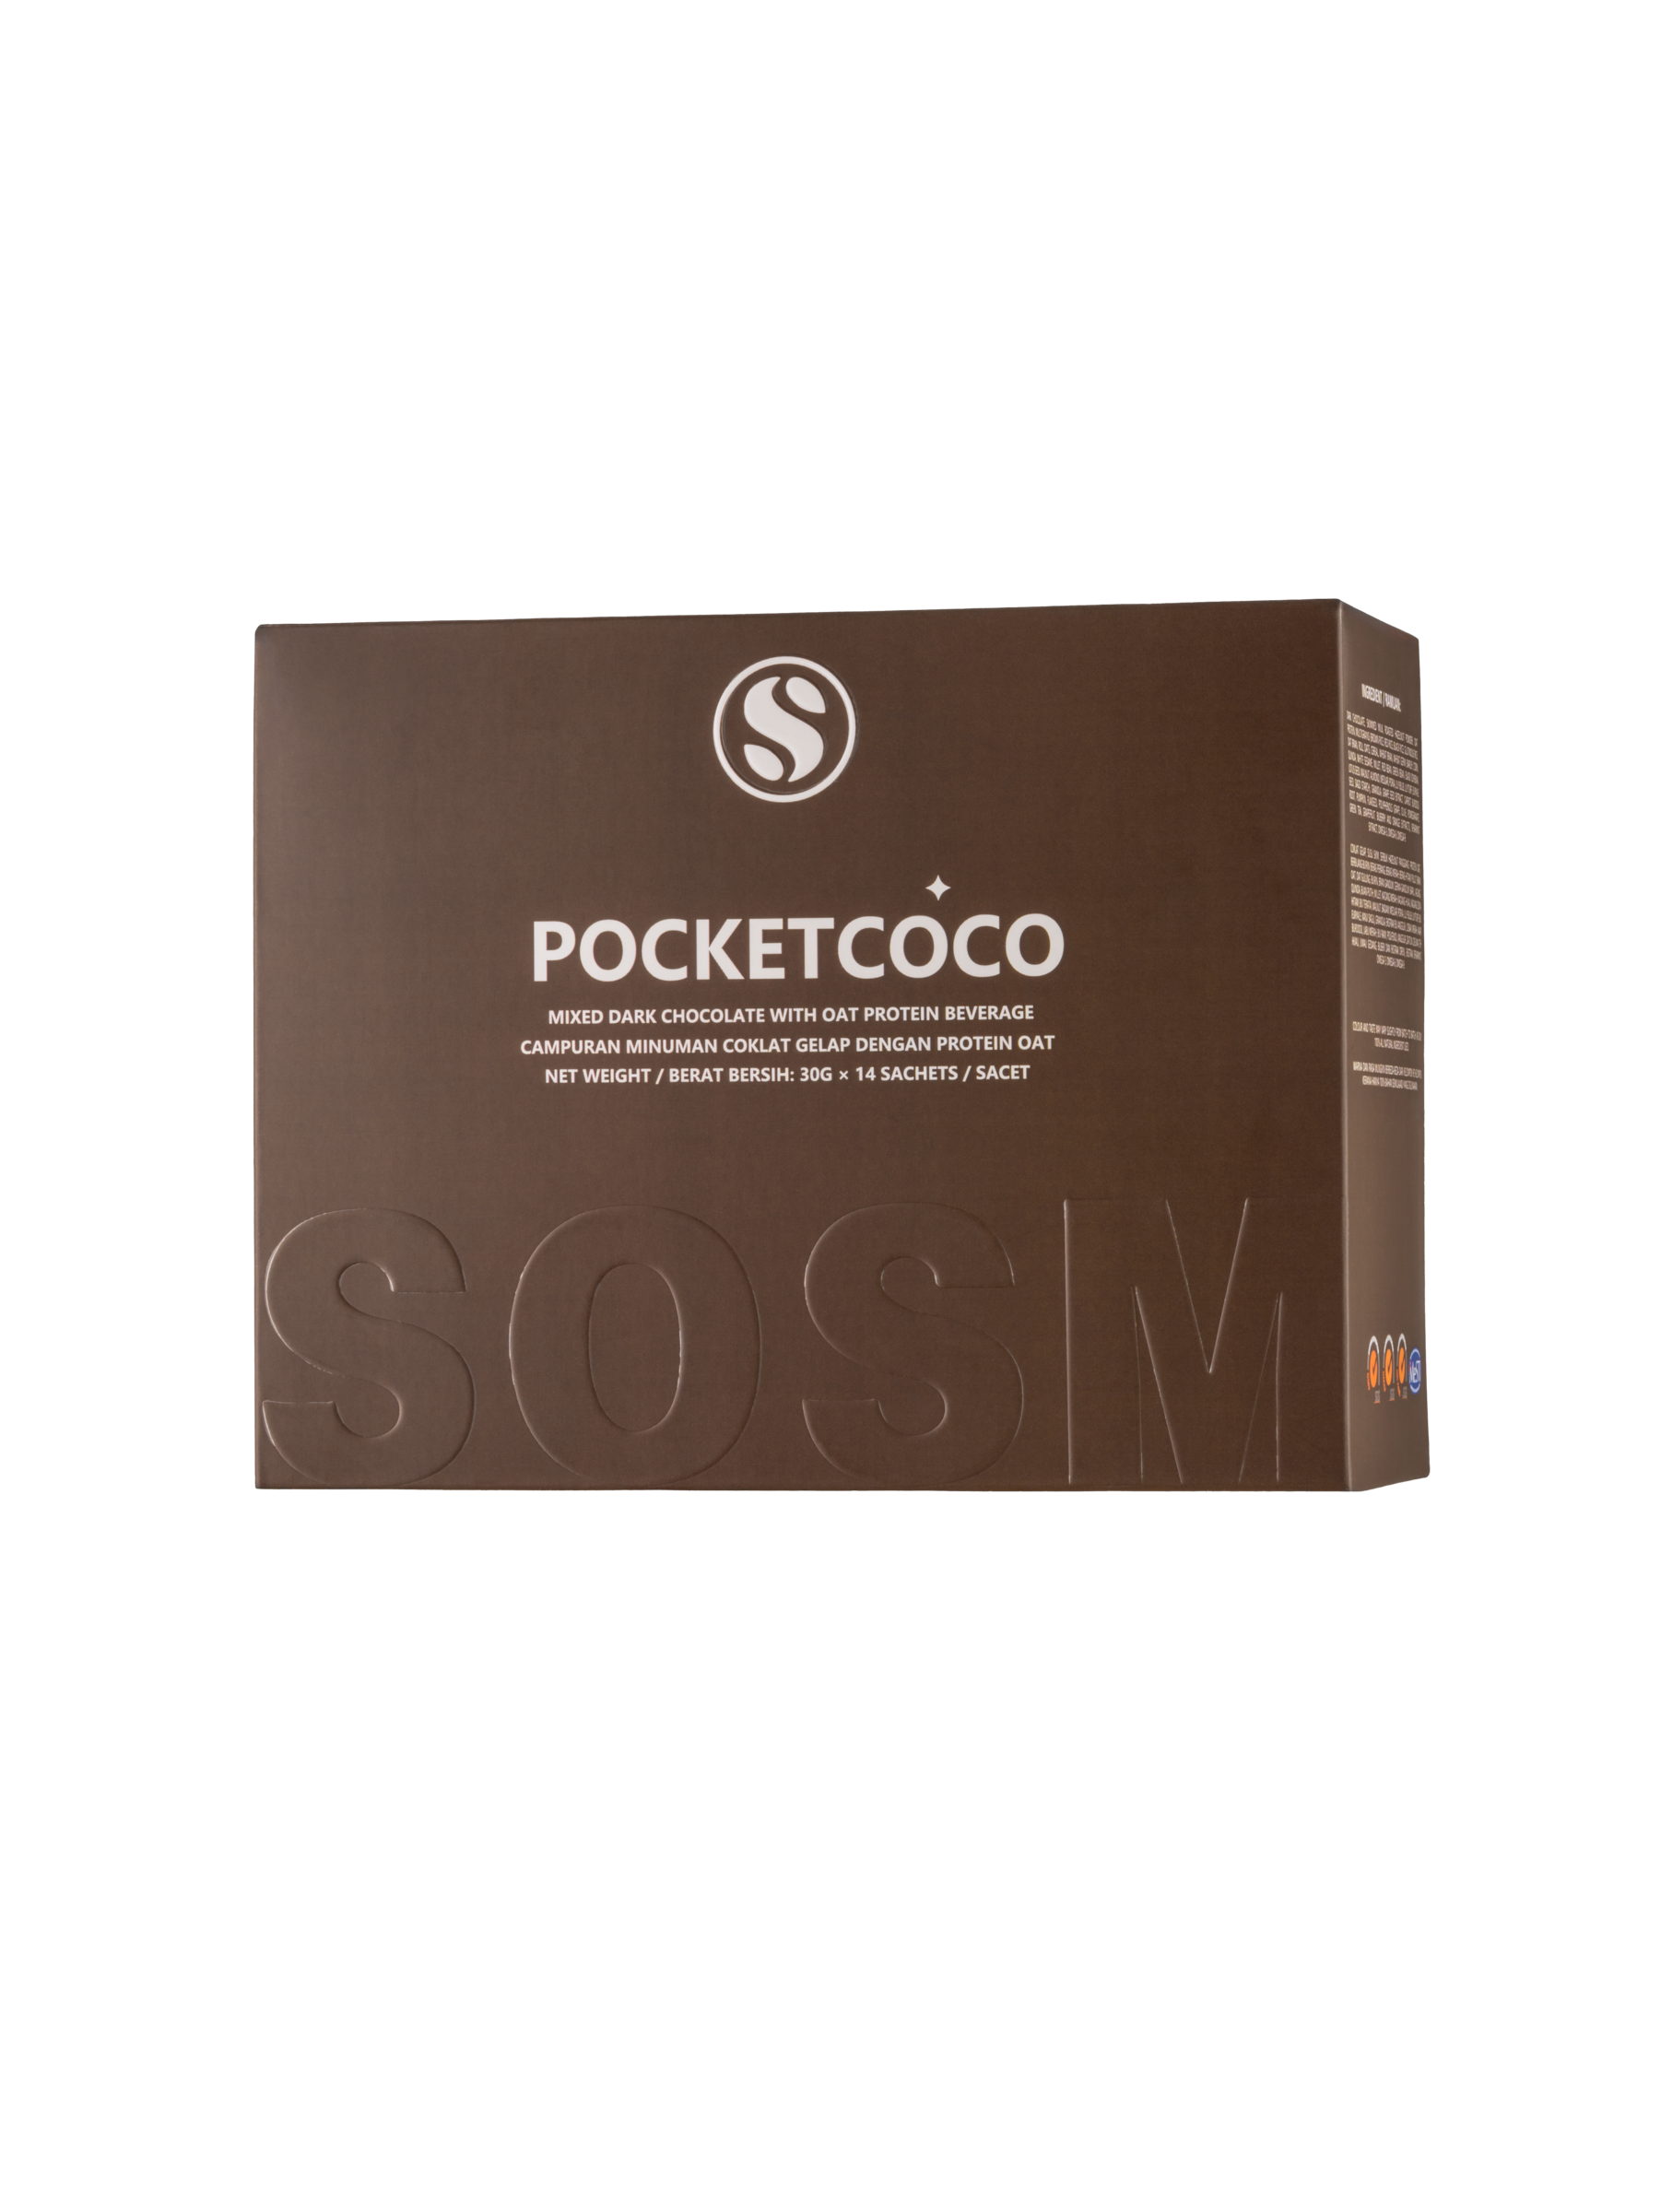 POCKETCOCO BOX